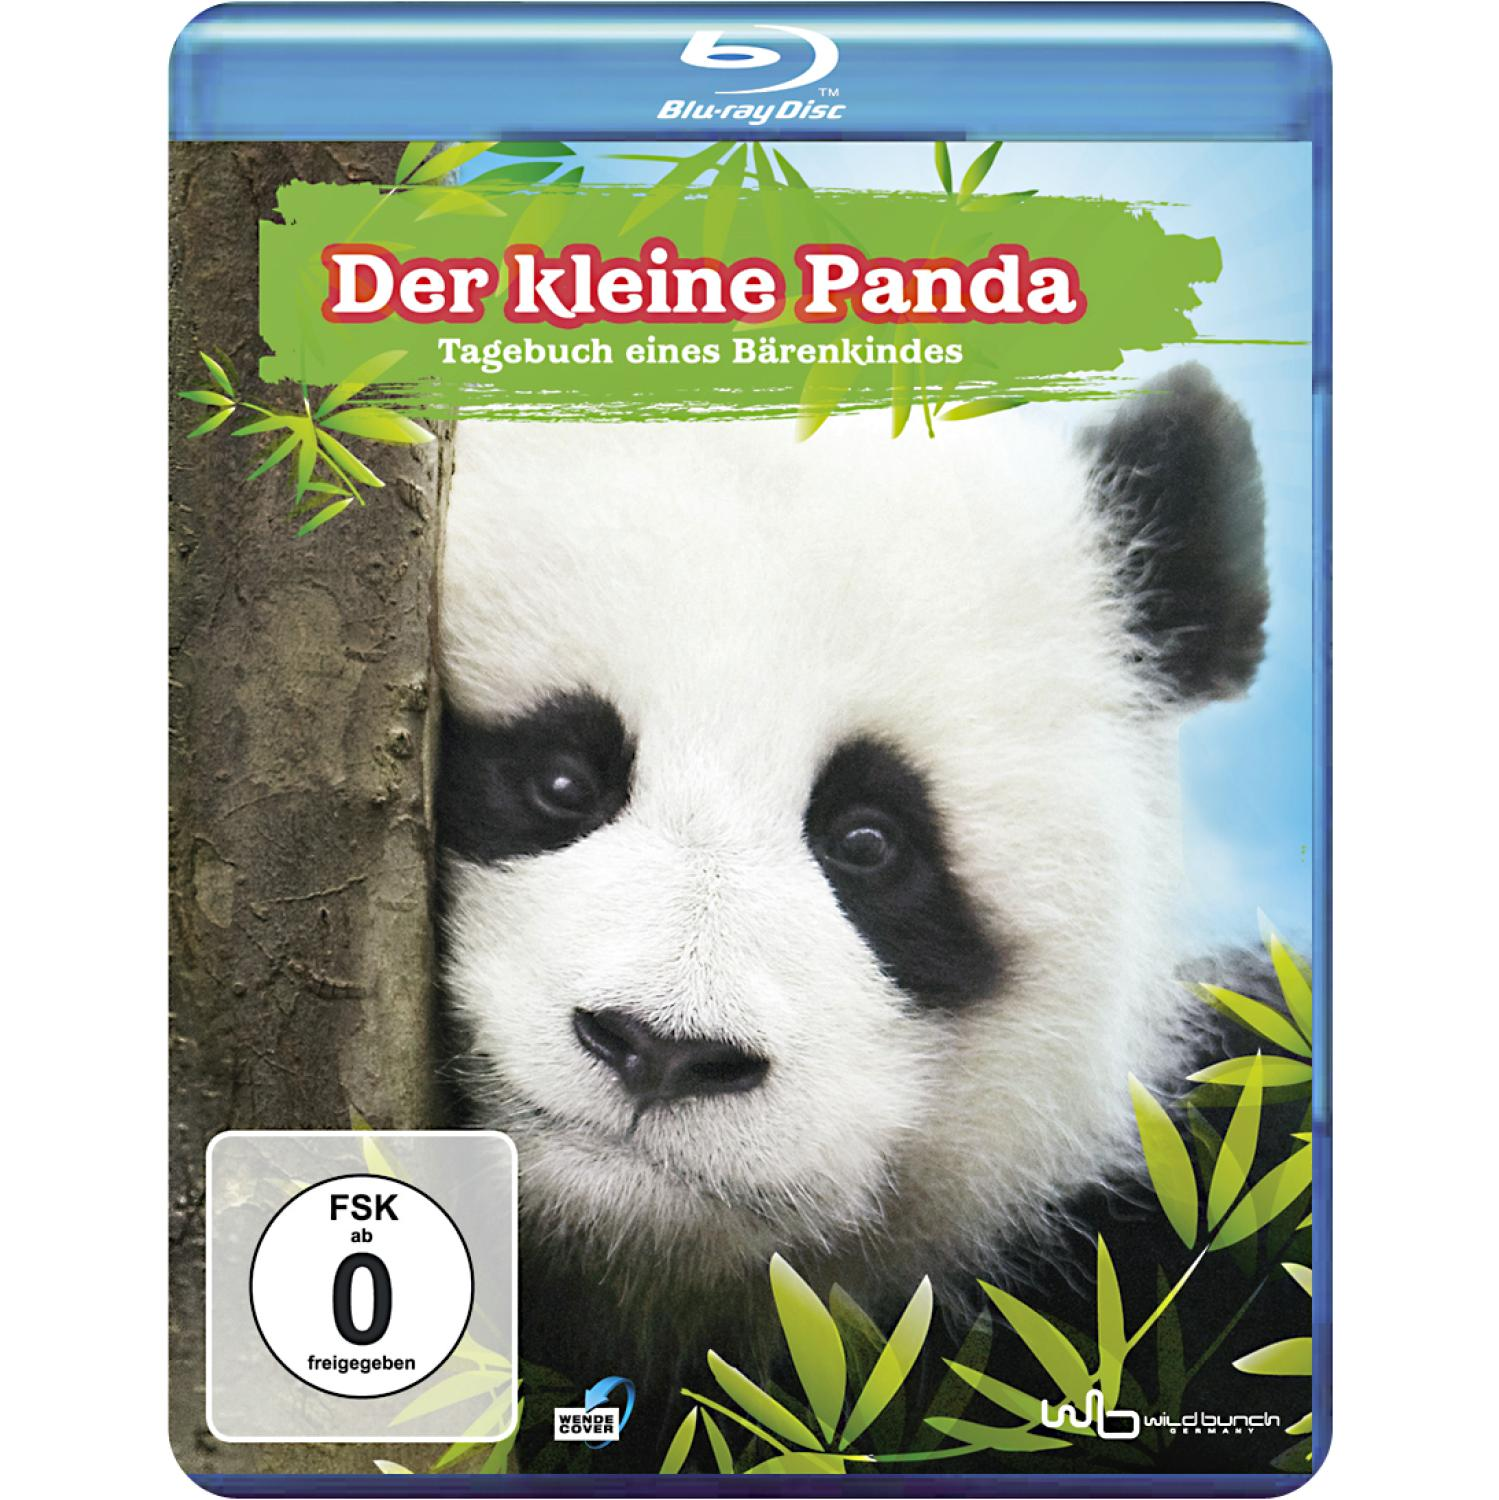 - Tagebuch Bärenkindes eines kleine Panda Blu-ray Der